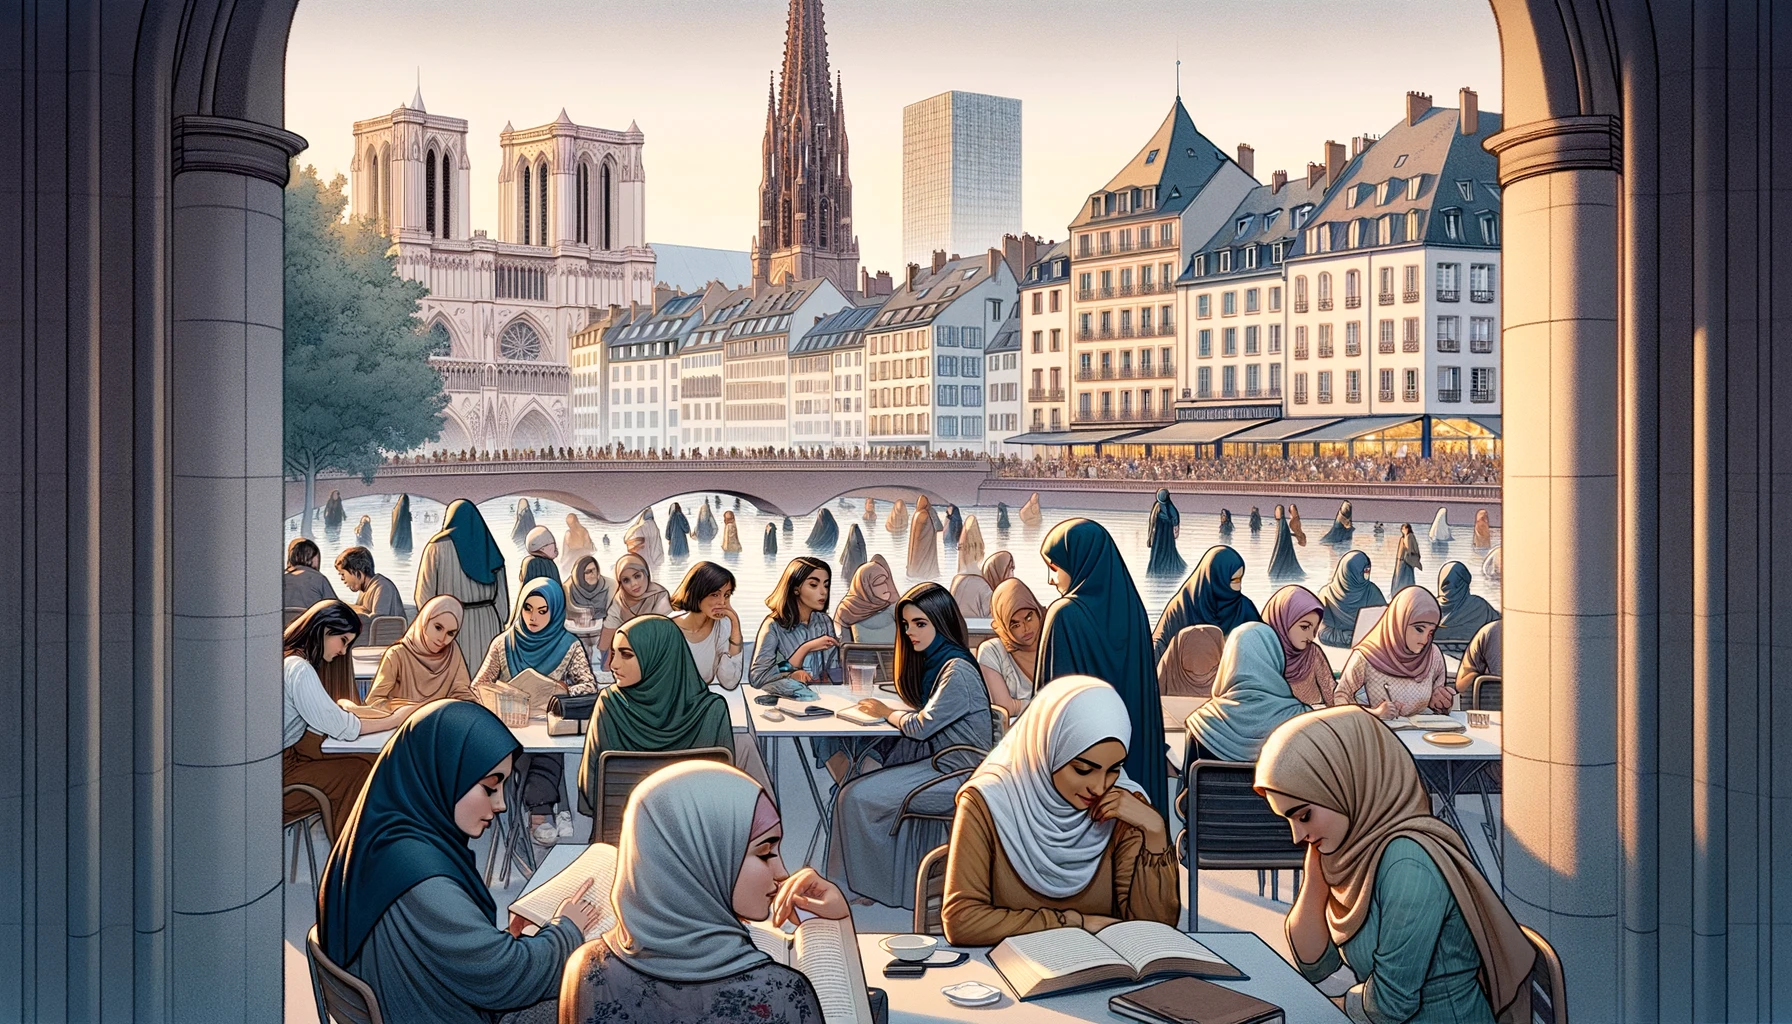 Comprendre l'Aaugmentation du Port du Voile Islamique parmi les Françaises : Causes et Implications Sociales